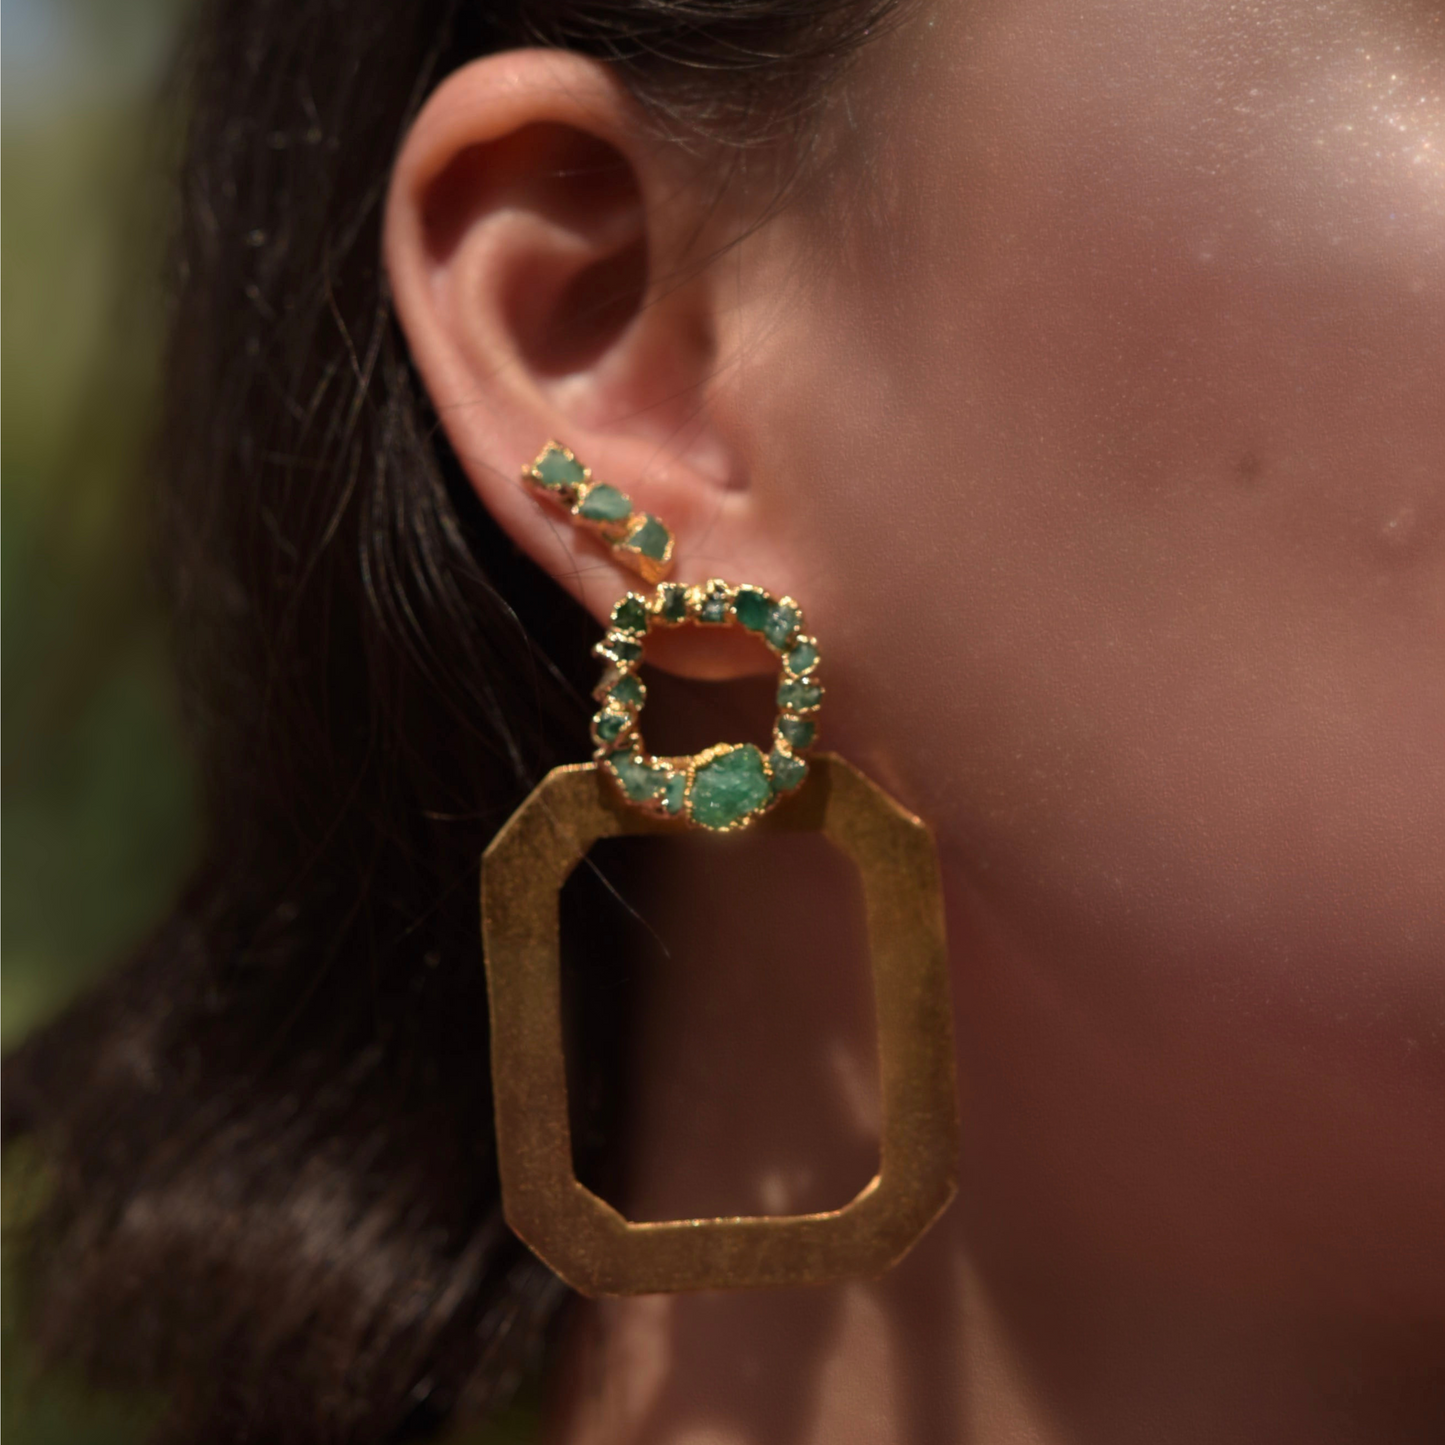 fidi earrings